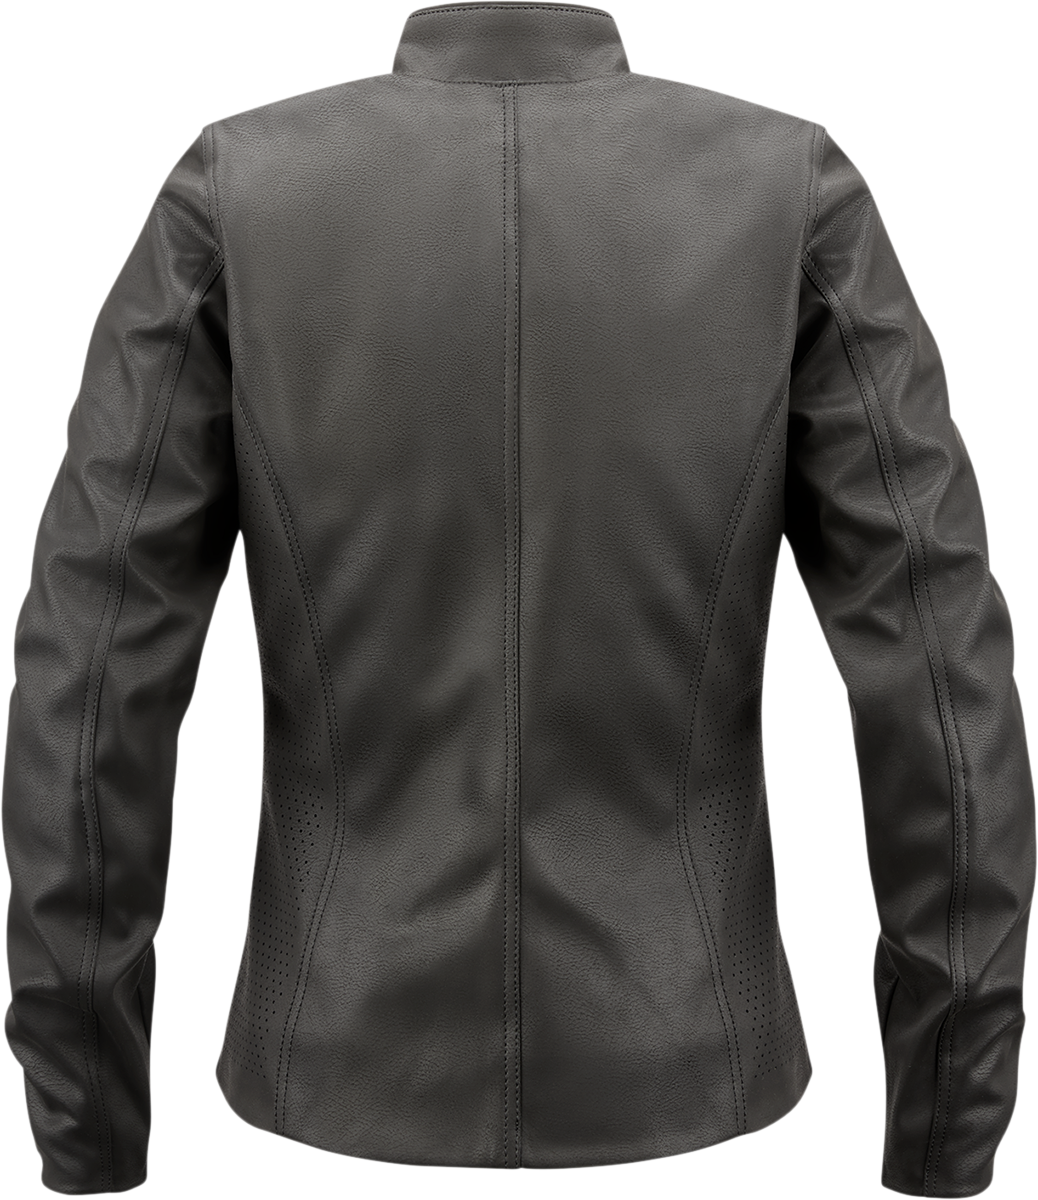 ICON Women's Tuscadero2™ Jacket - Black - US 2XL 2822-1431